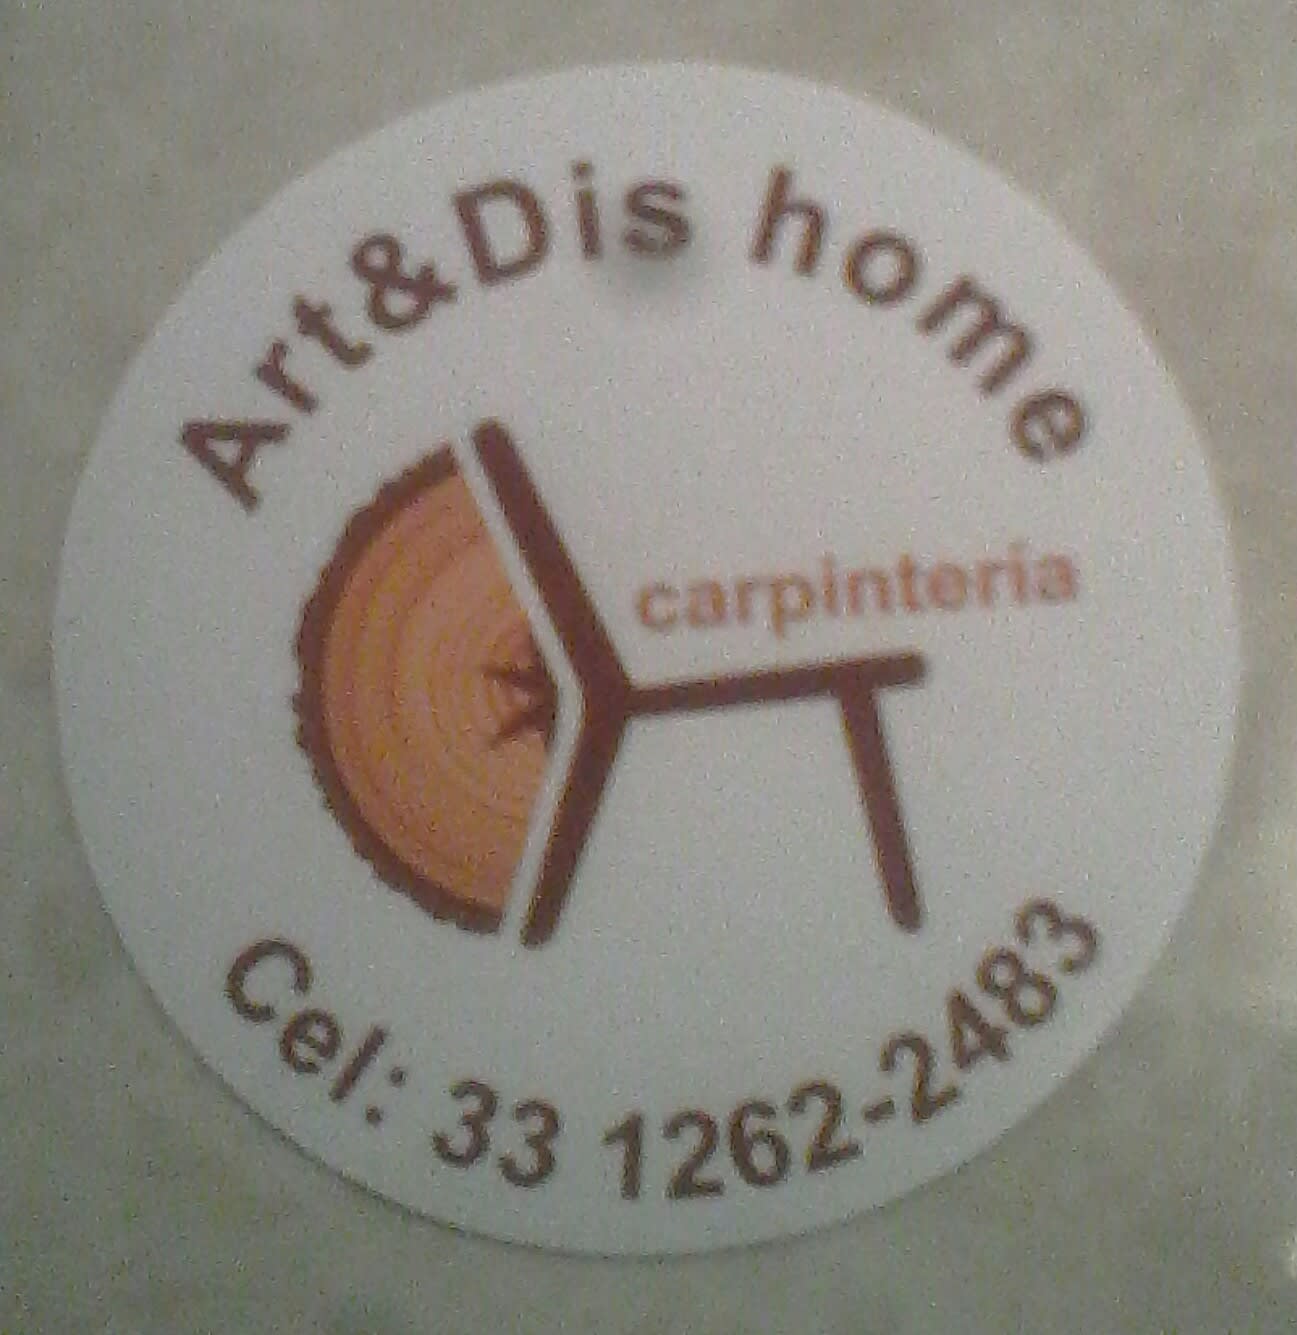 Art & Dis Home Carpintería